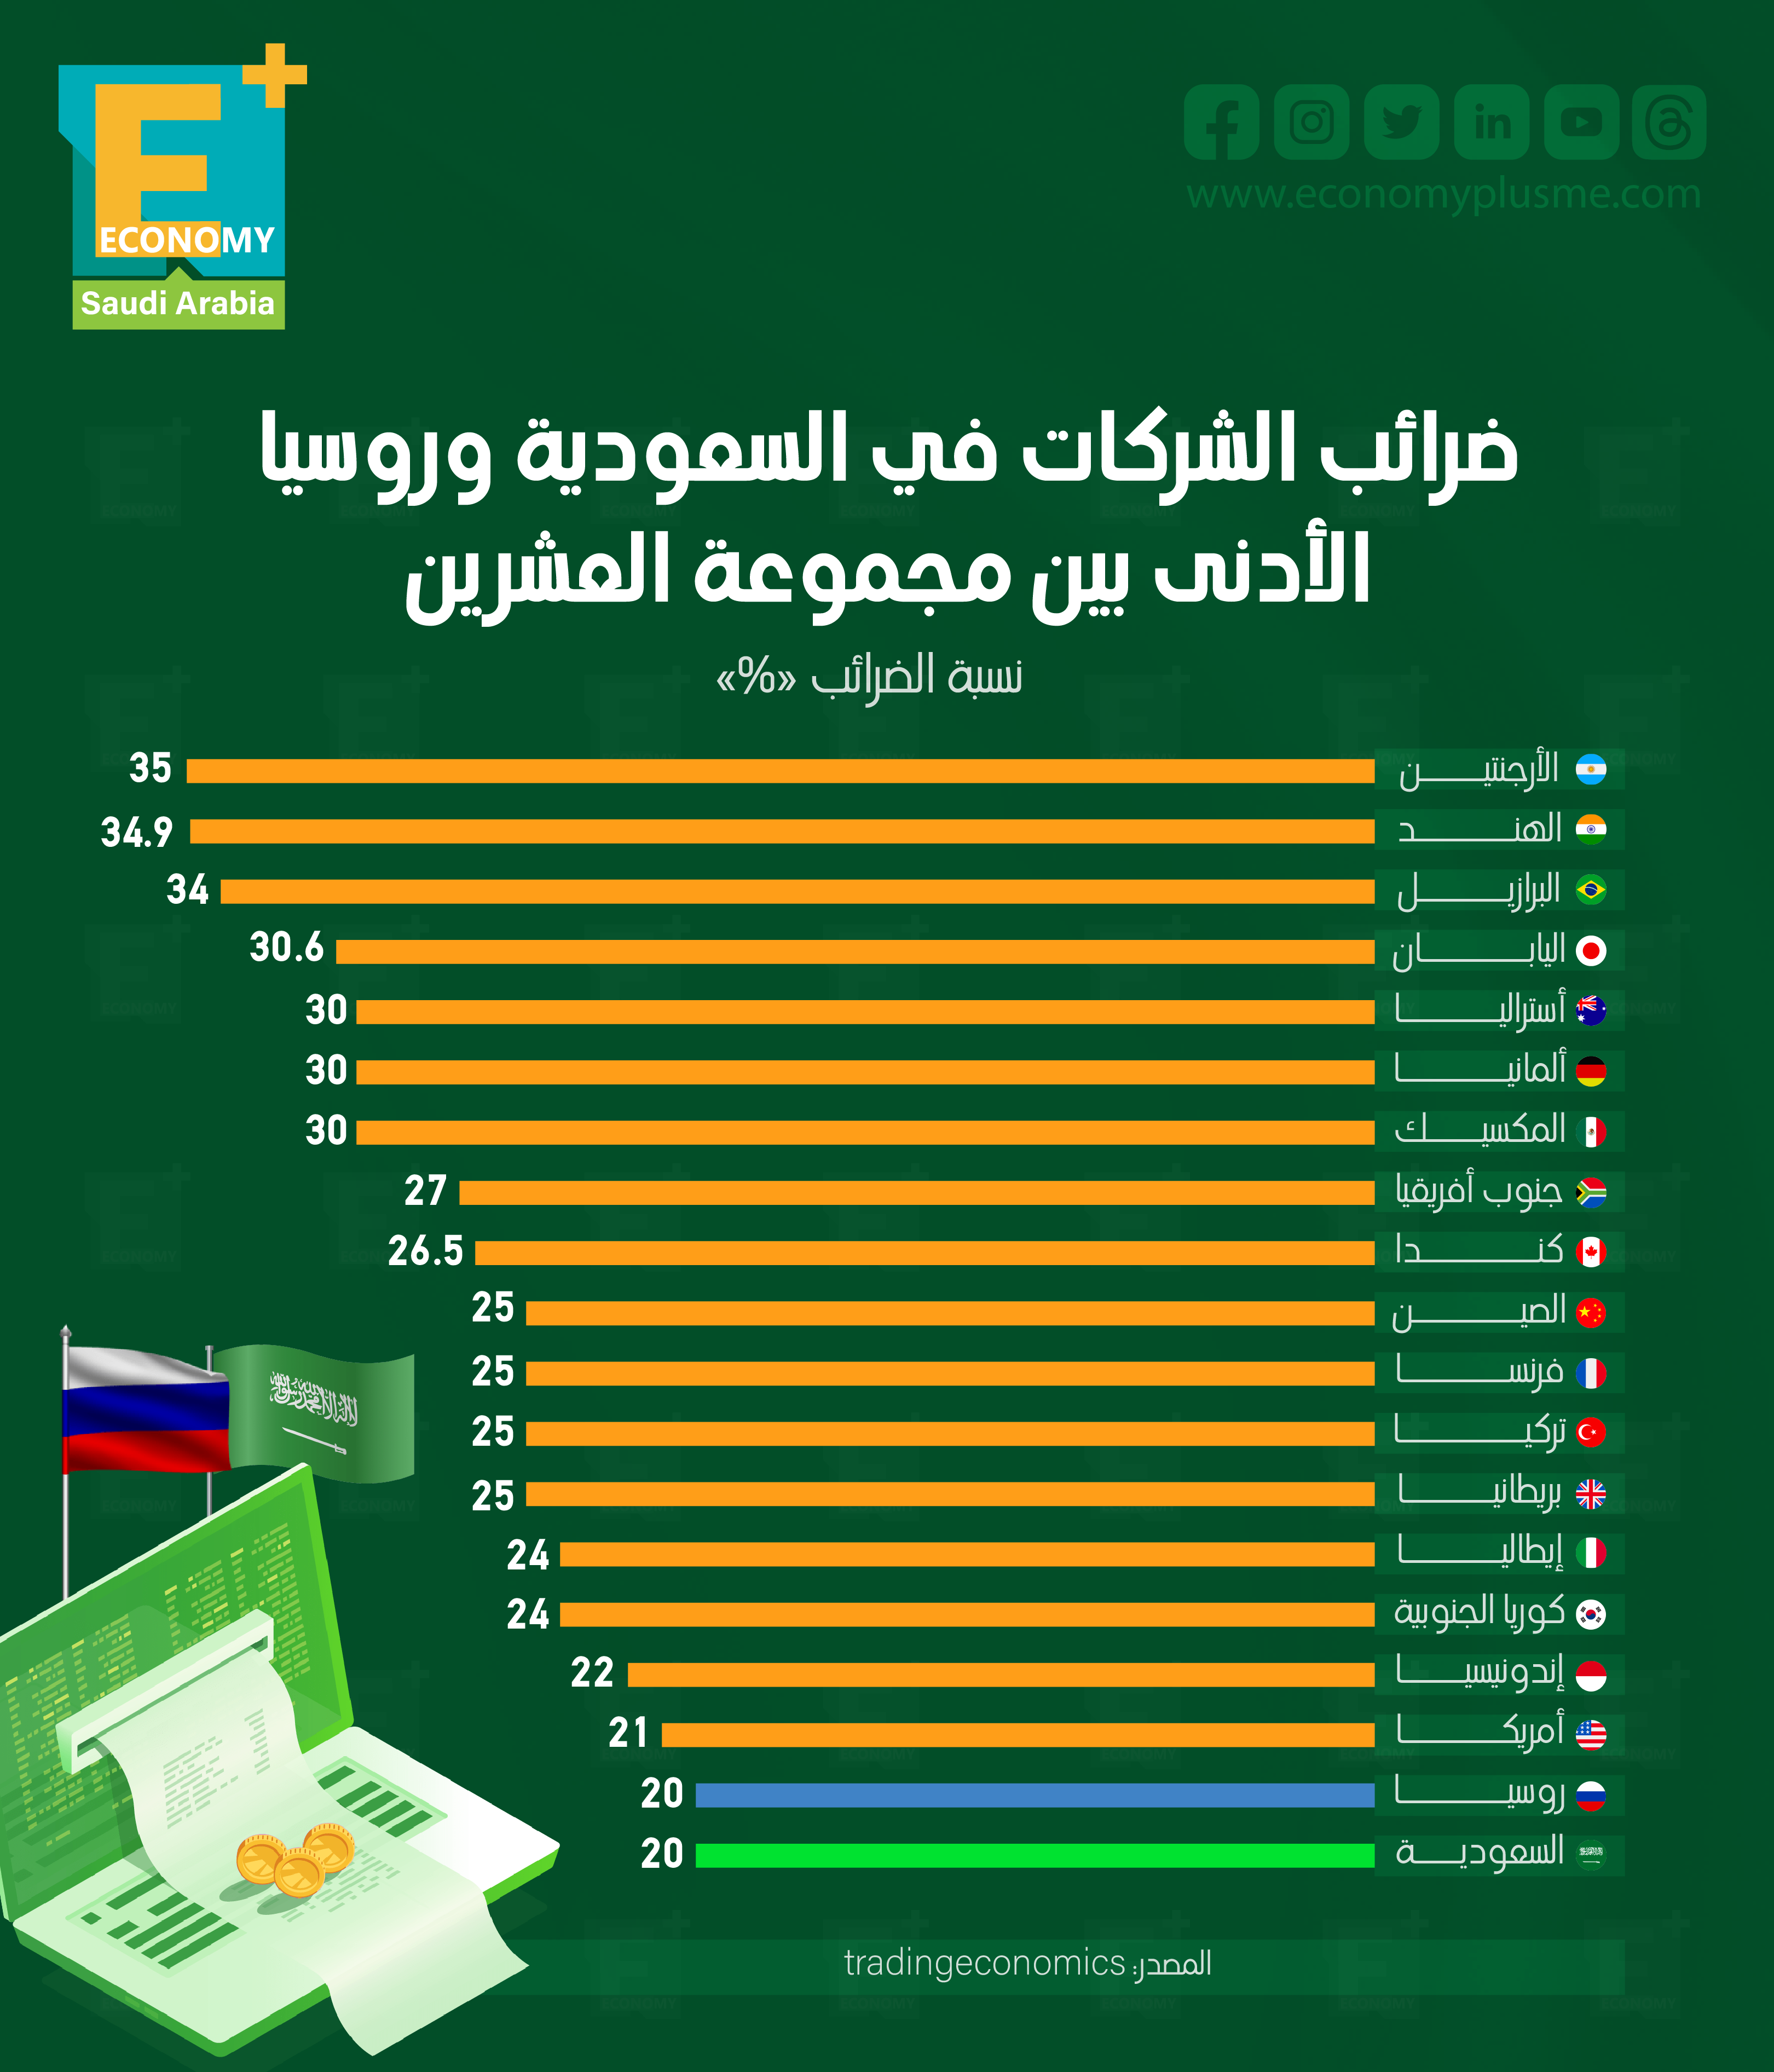 ضرائب الشركات في السعودية وروسيا الأدنى بين مجموعة العشرين